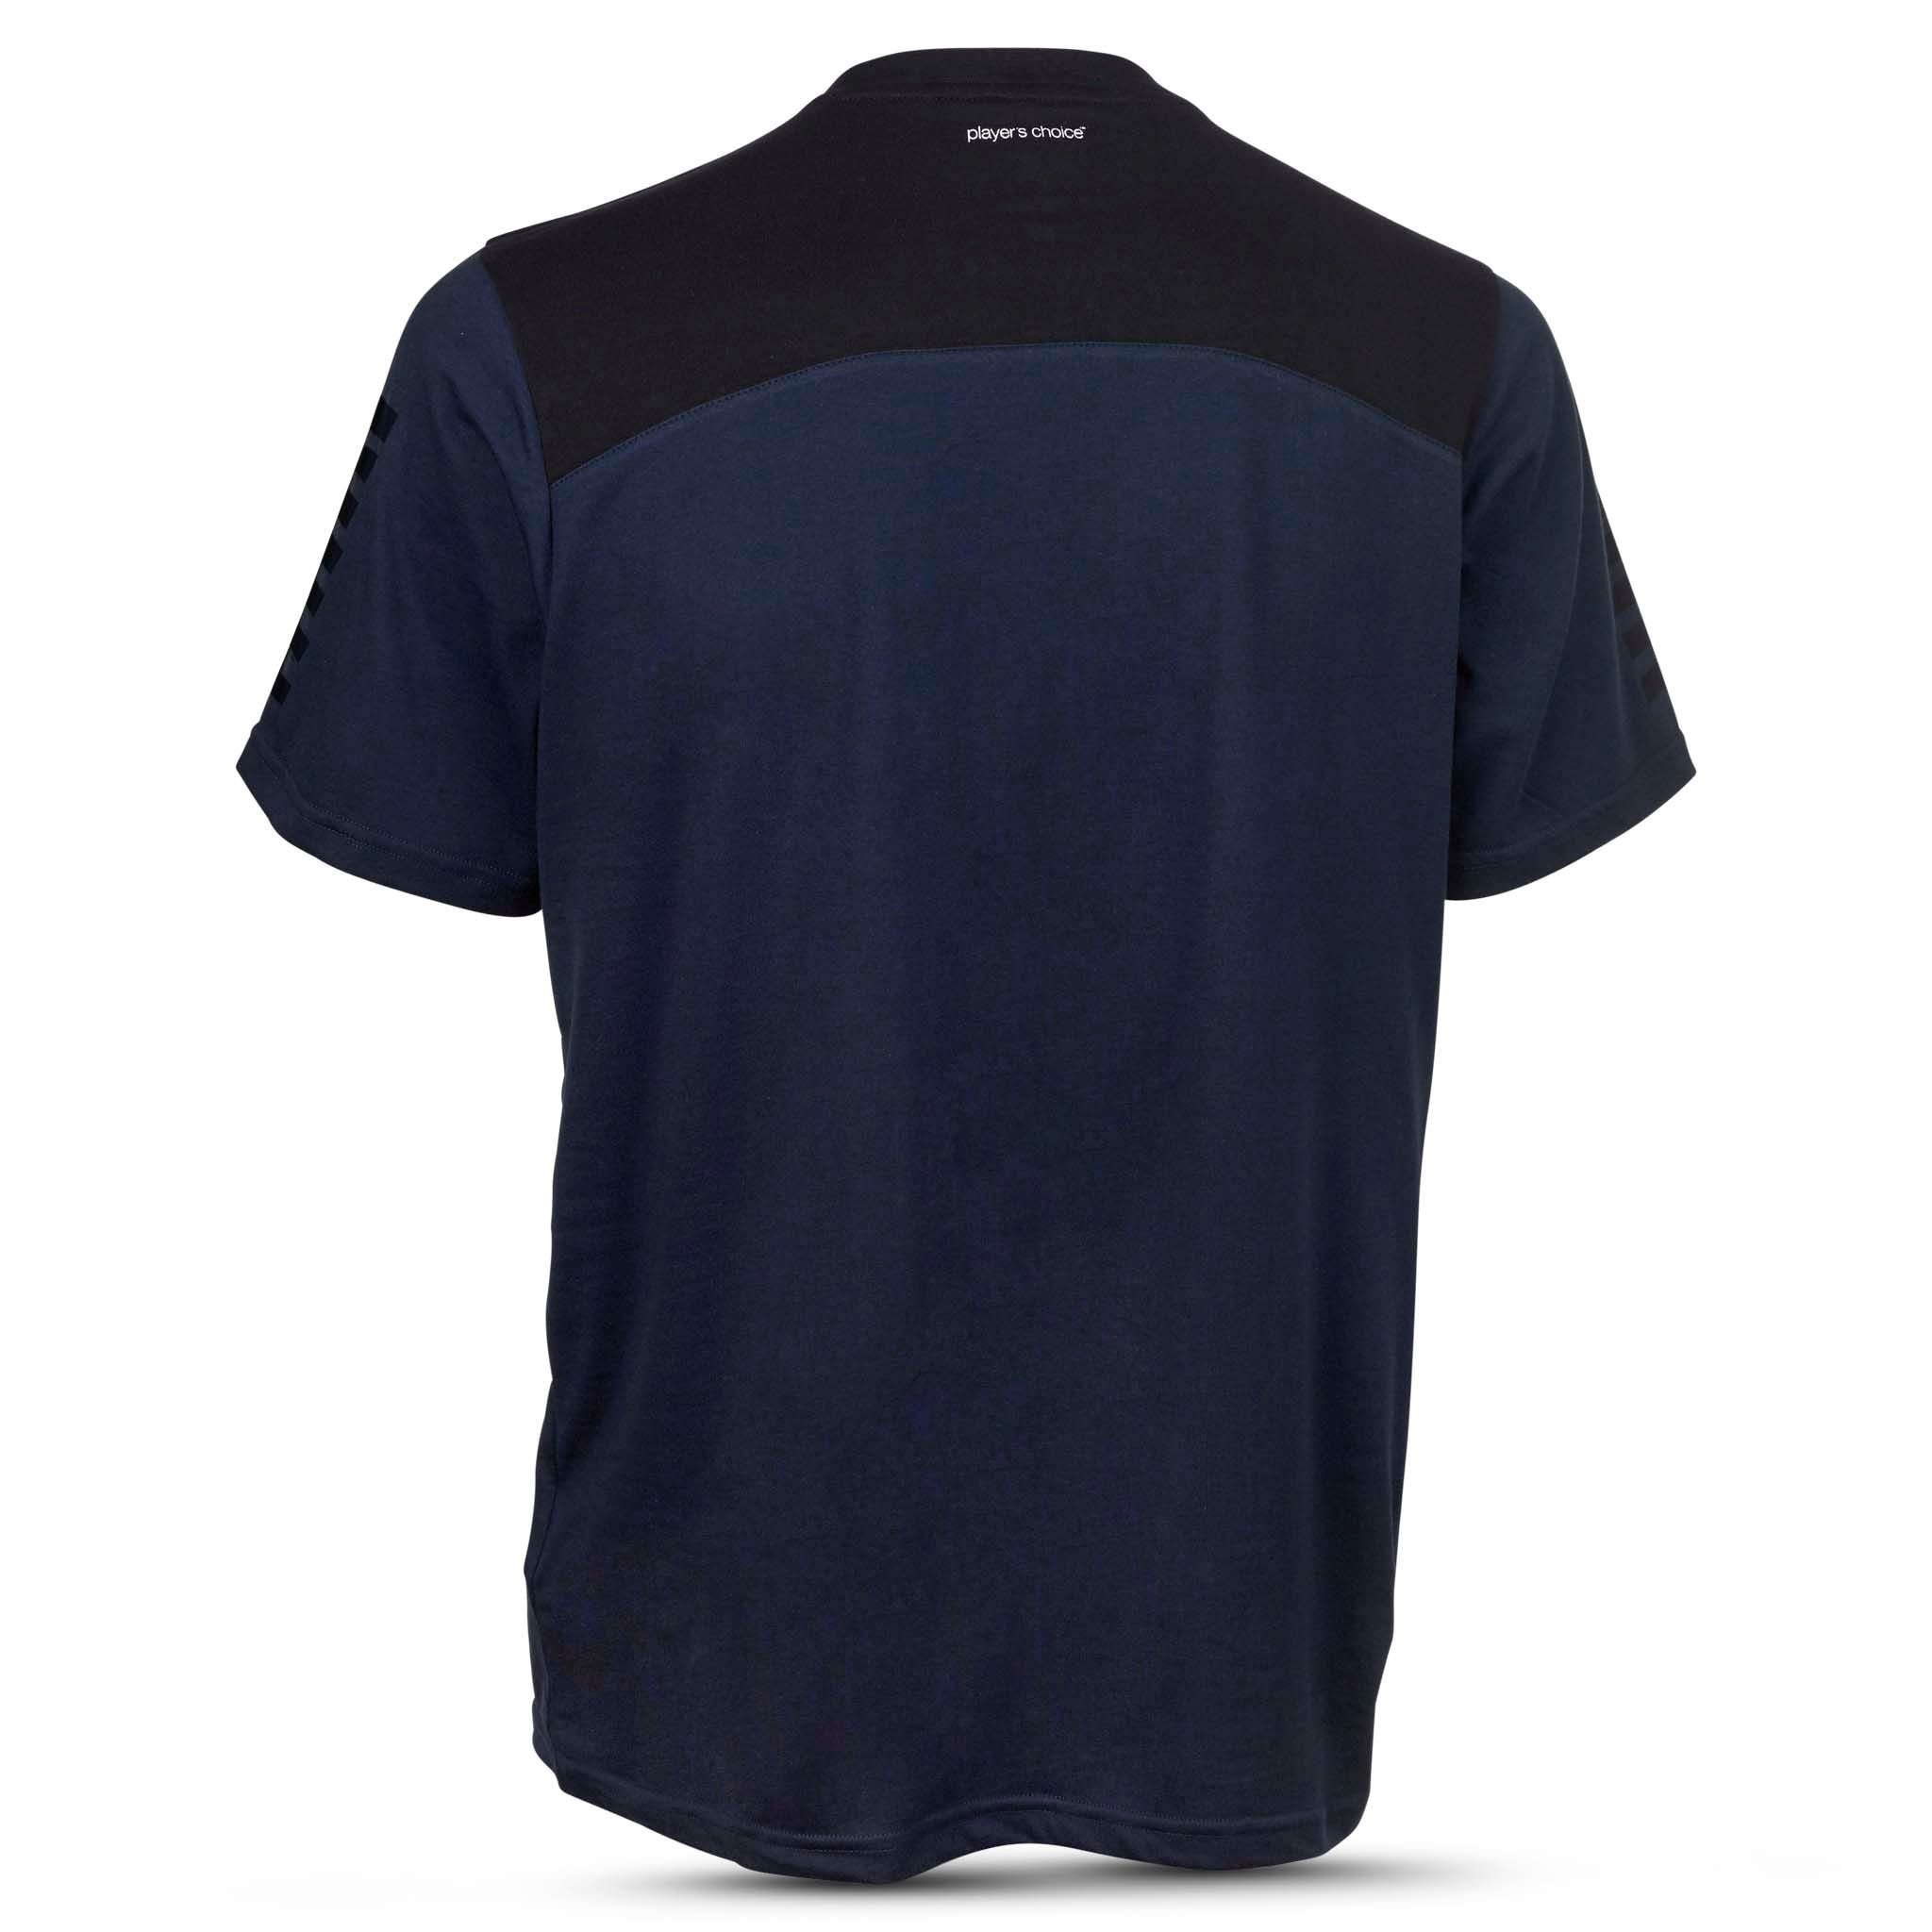 Oxford T-Shirt #farve_marine blå/sort #farve_marine blå/sort